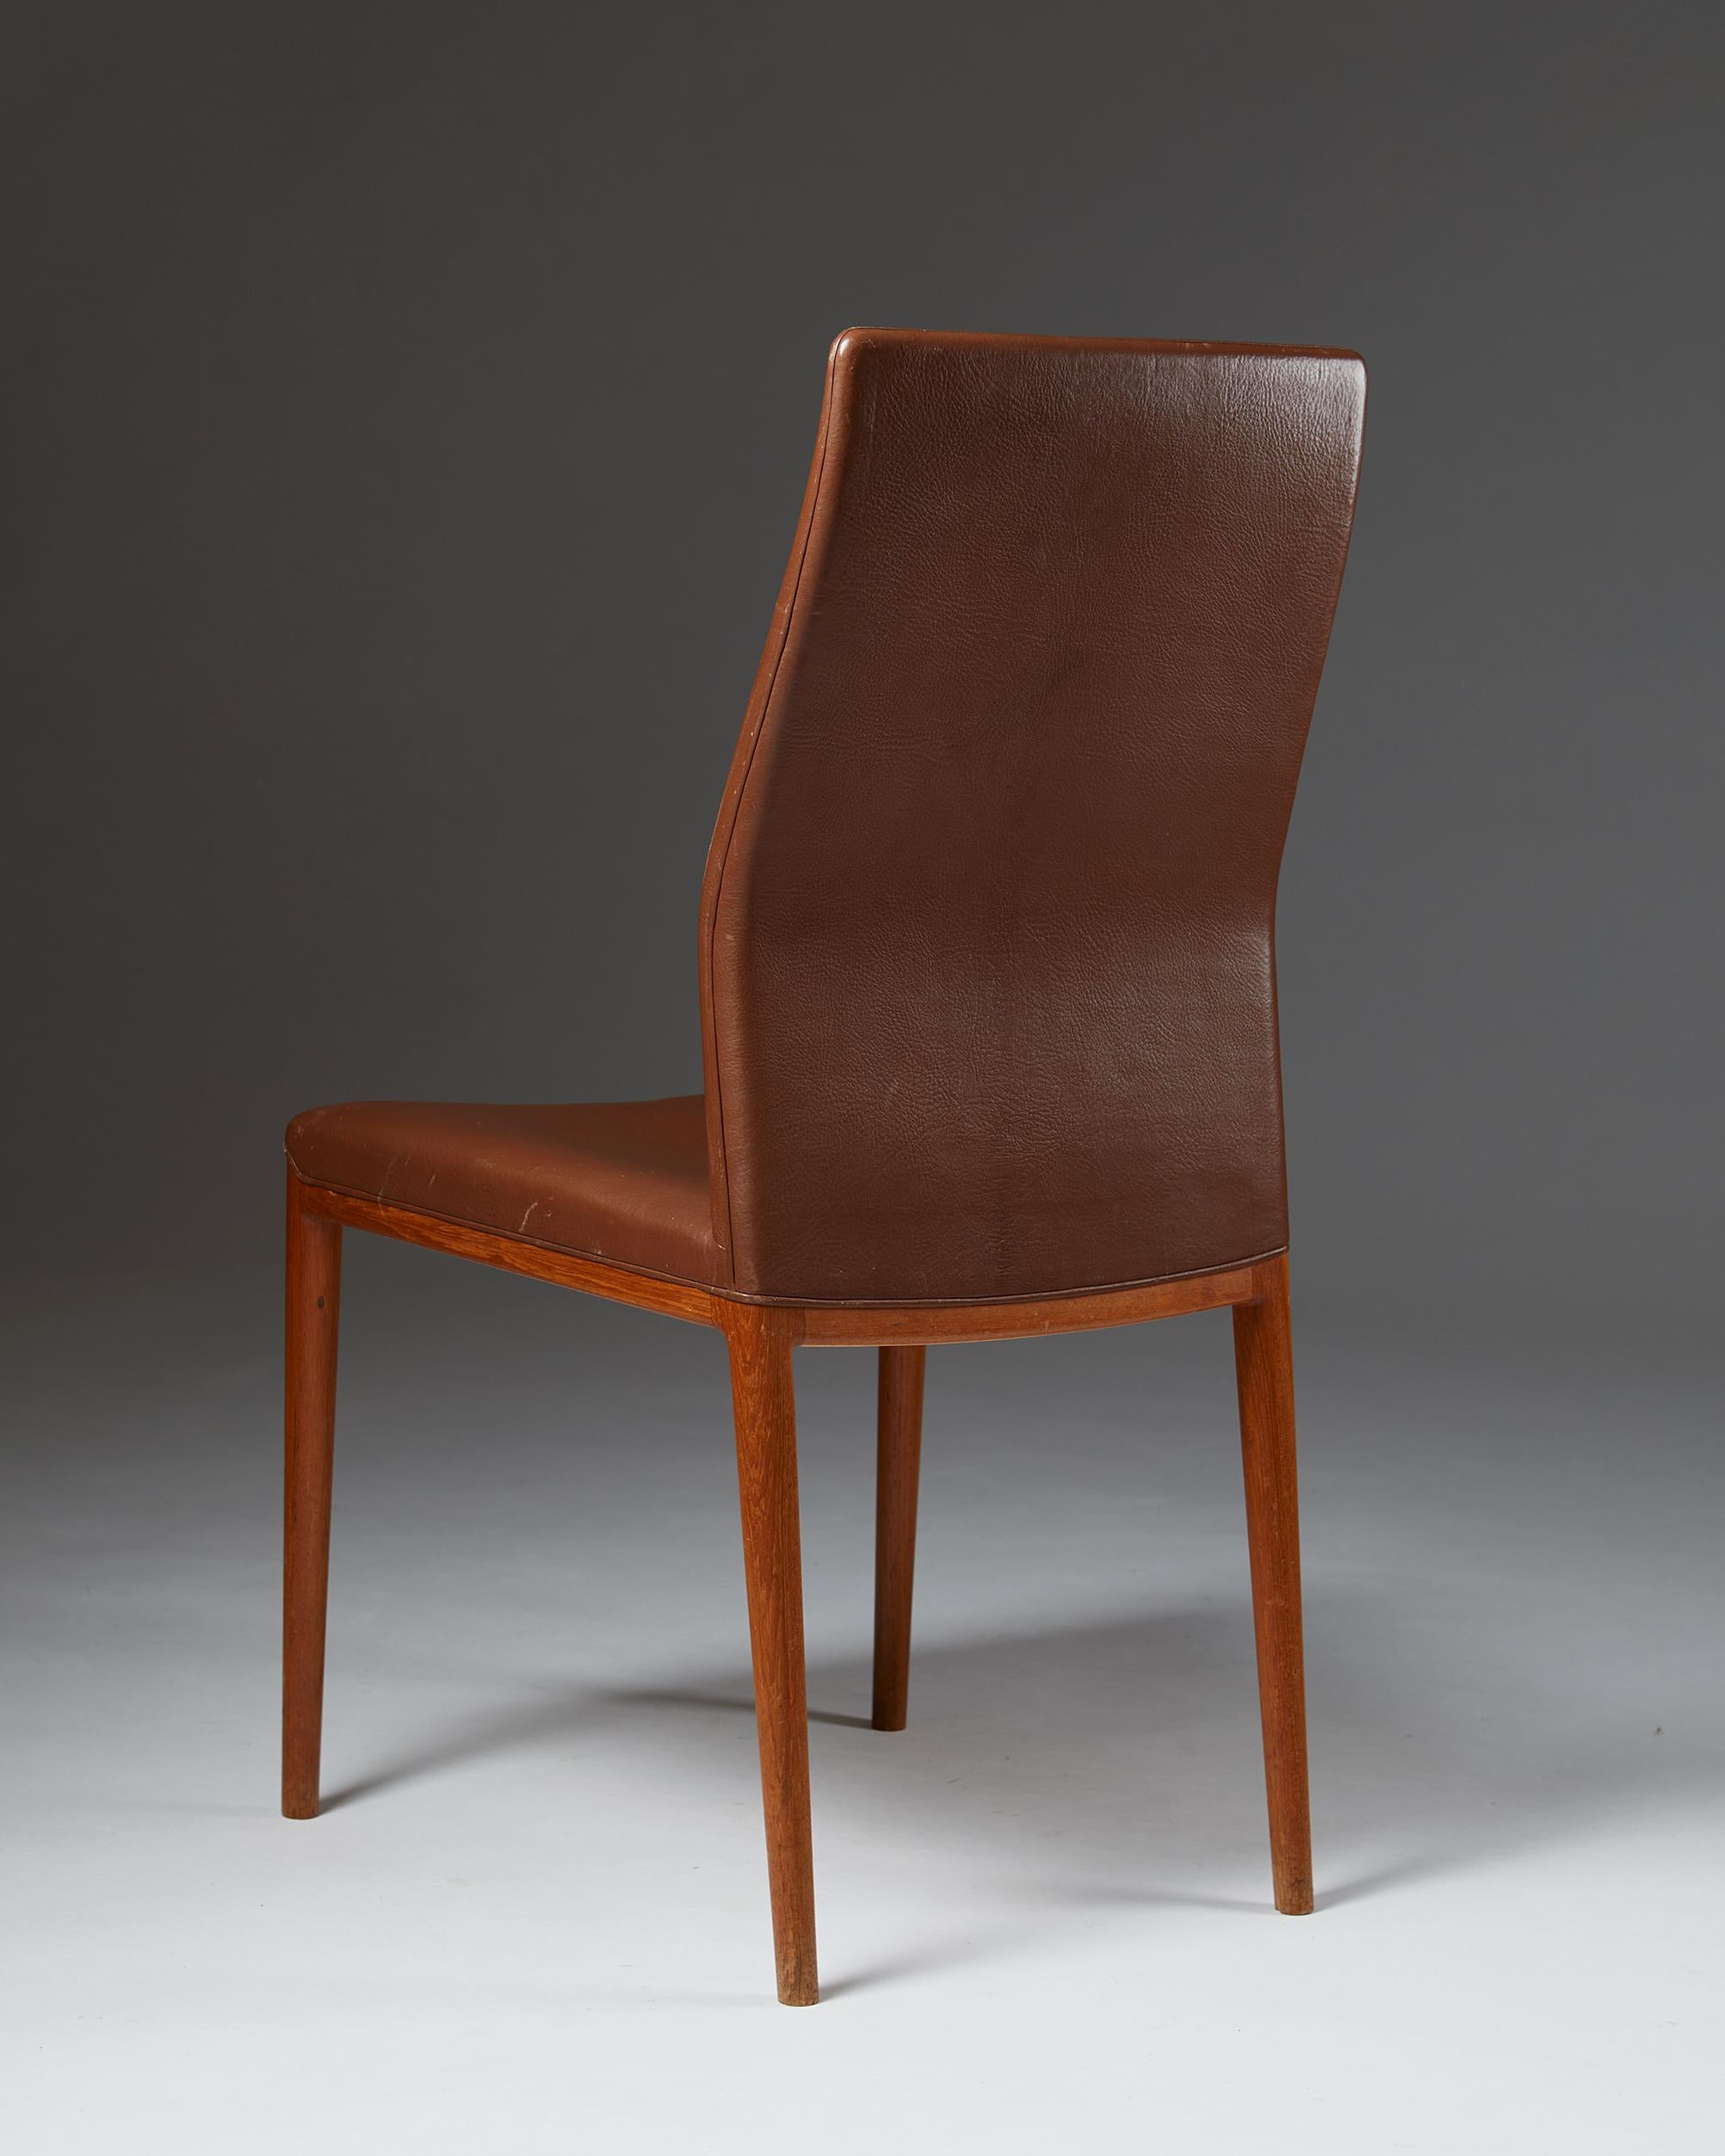 Leather Set of Four Chairs Designed by Helge Vestergaard Jensen for Sören Horn, Denmark